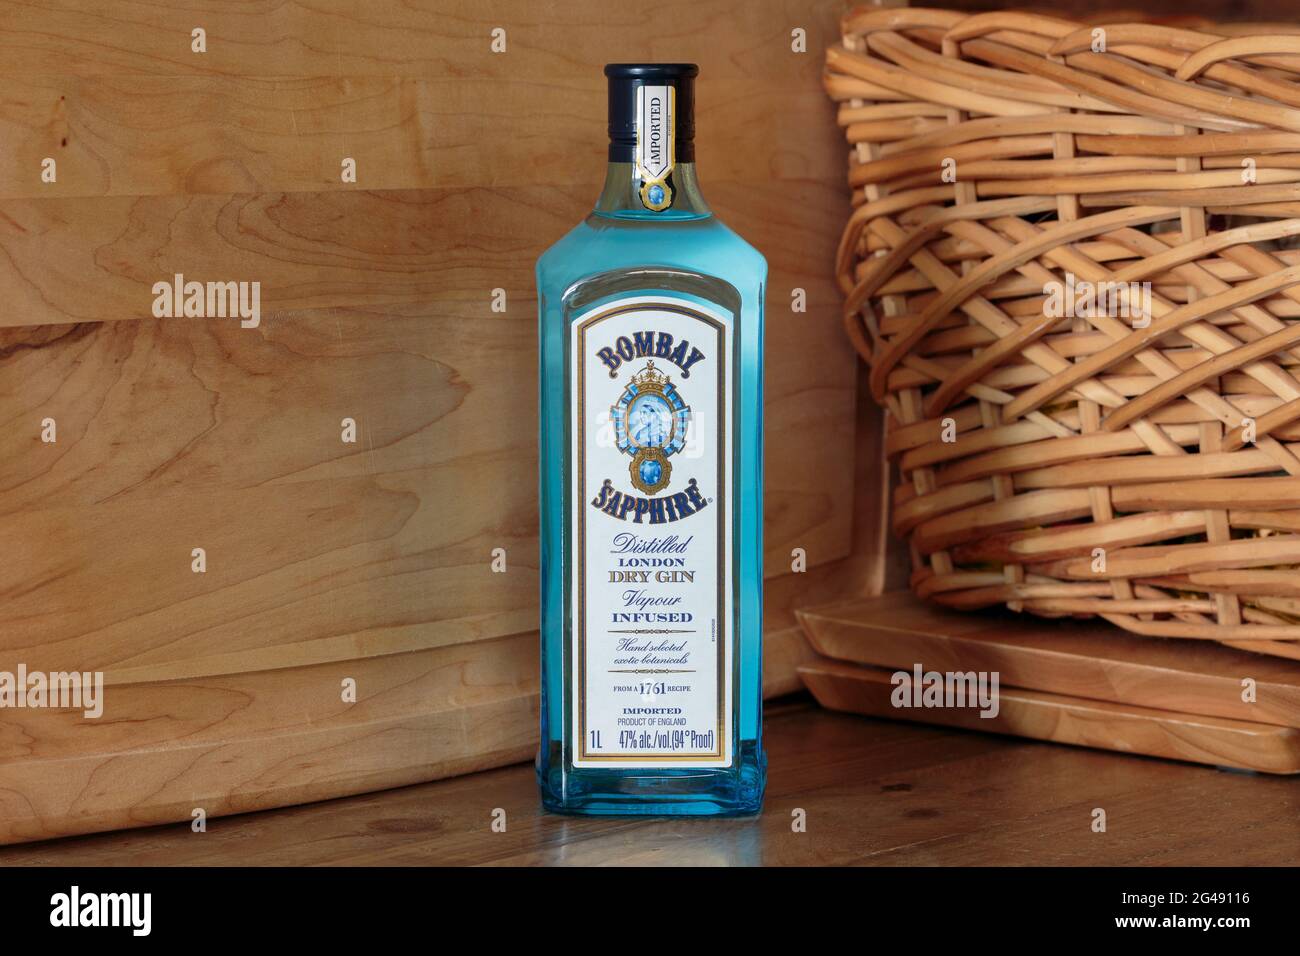 Bottiglia di Bombay Sapphire distillato london Dry gin, e inglese vapore infuso gin Foto Stock